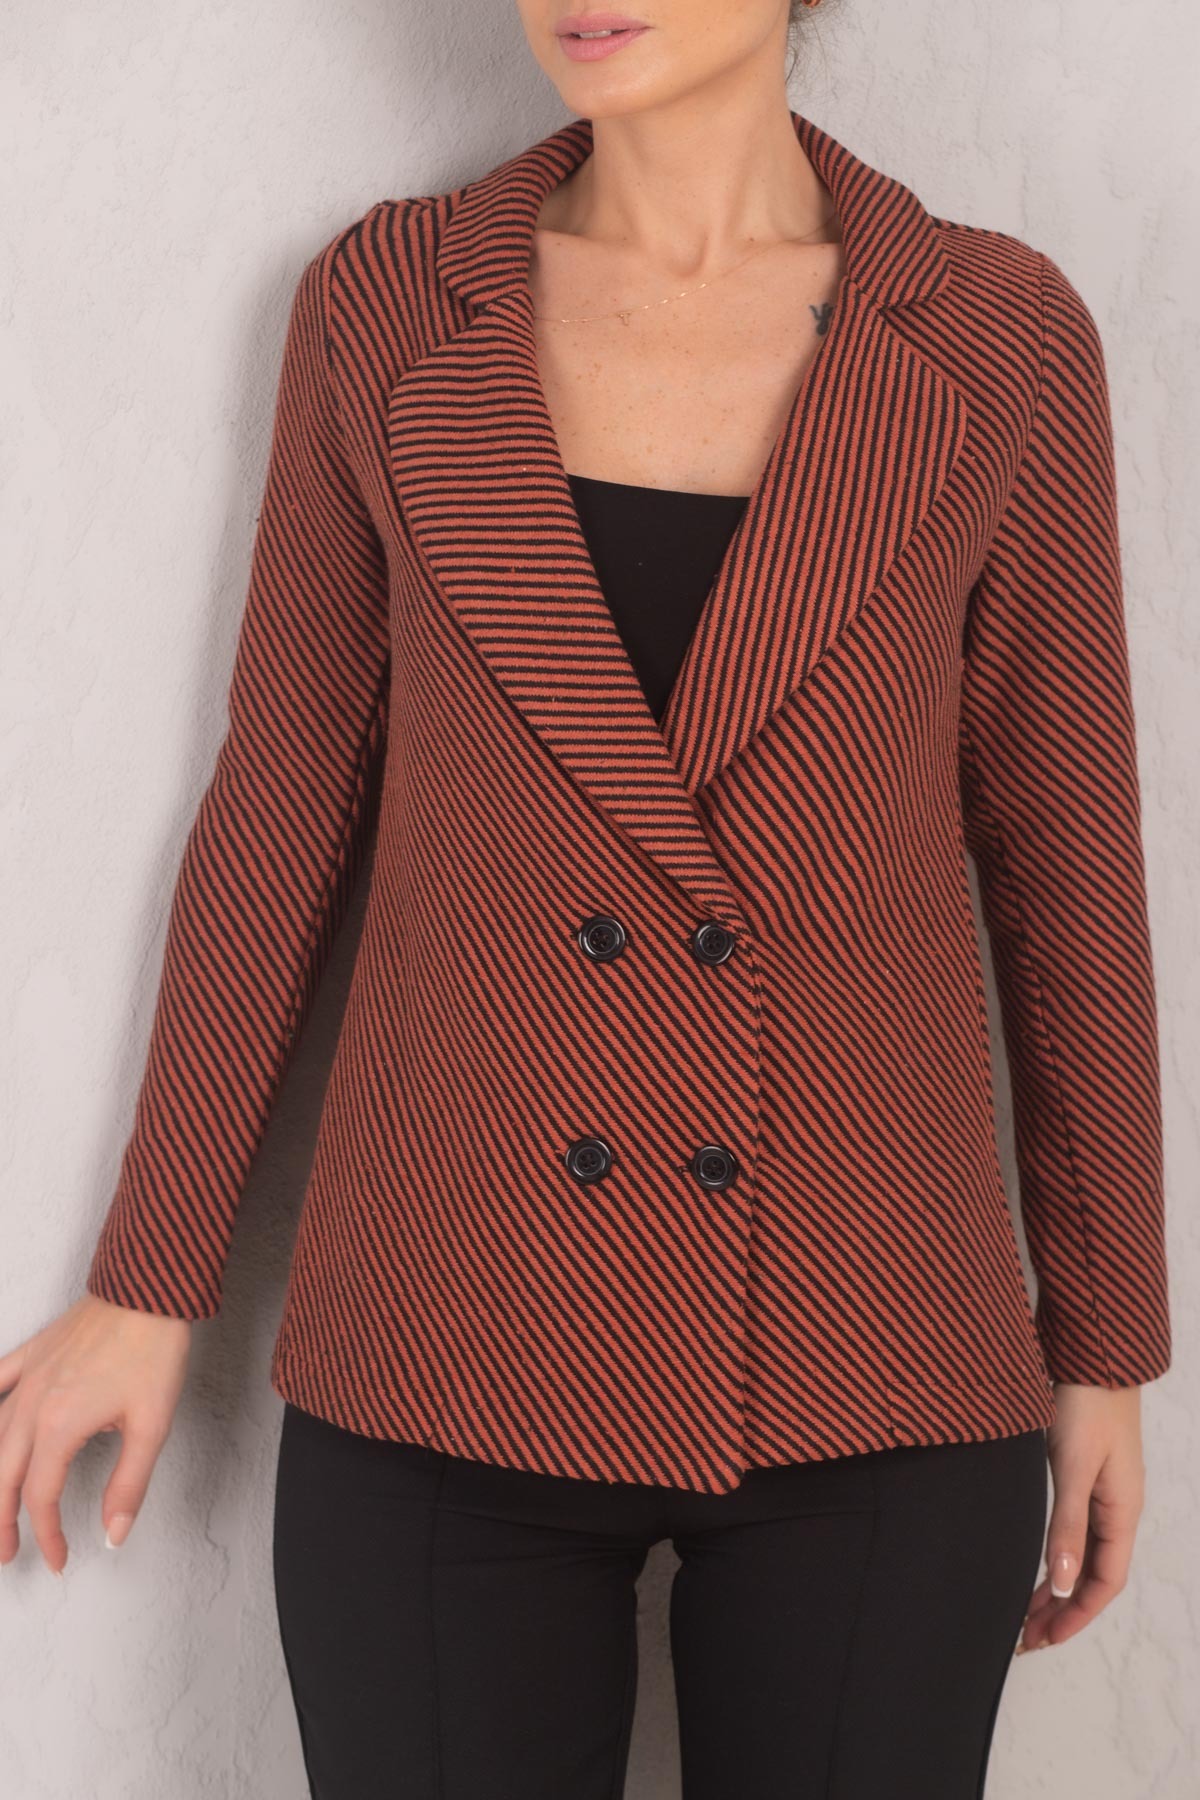 Levně armonika Women's Tile Line Patterned Four Button Cachet Jacket